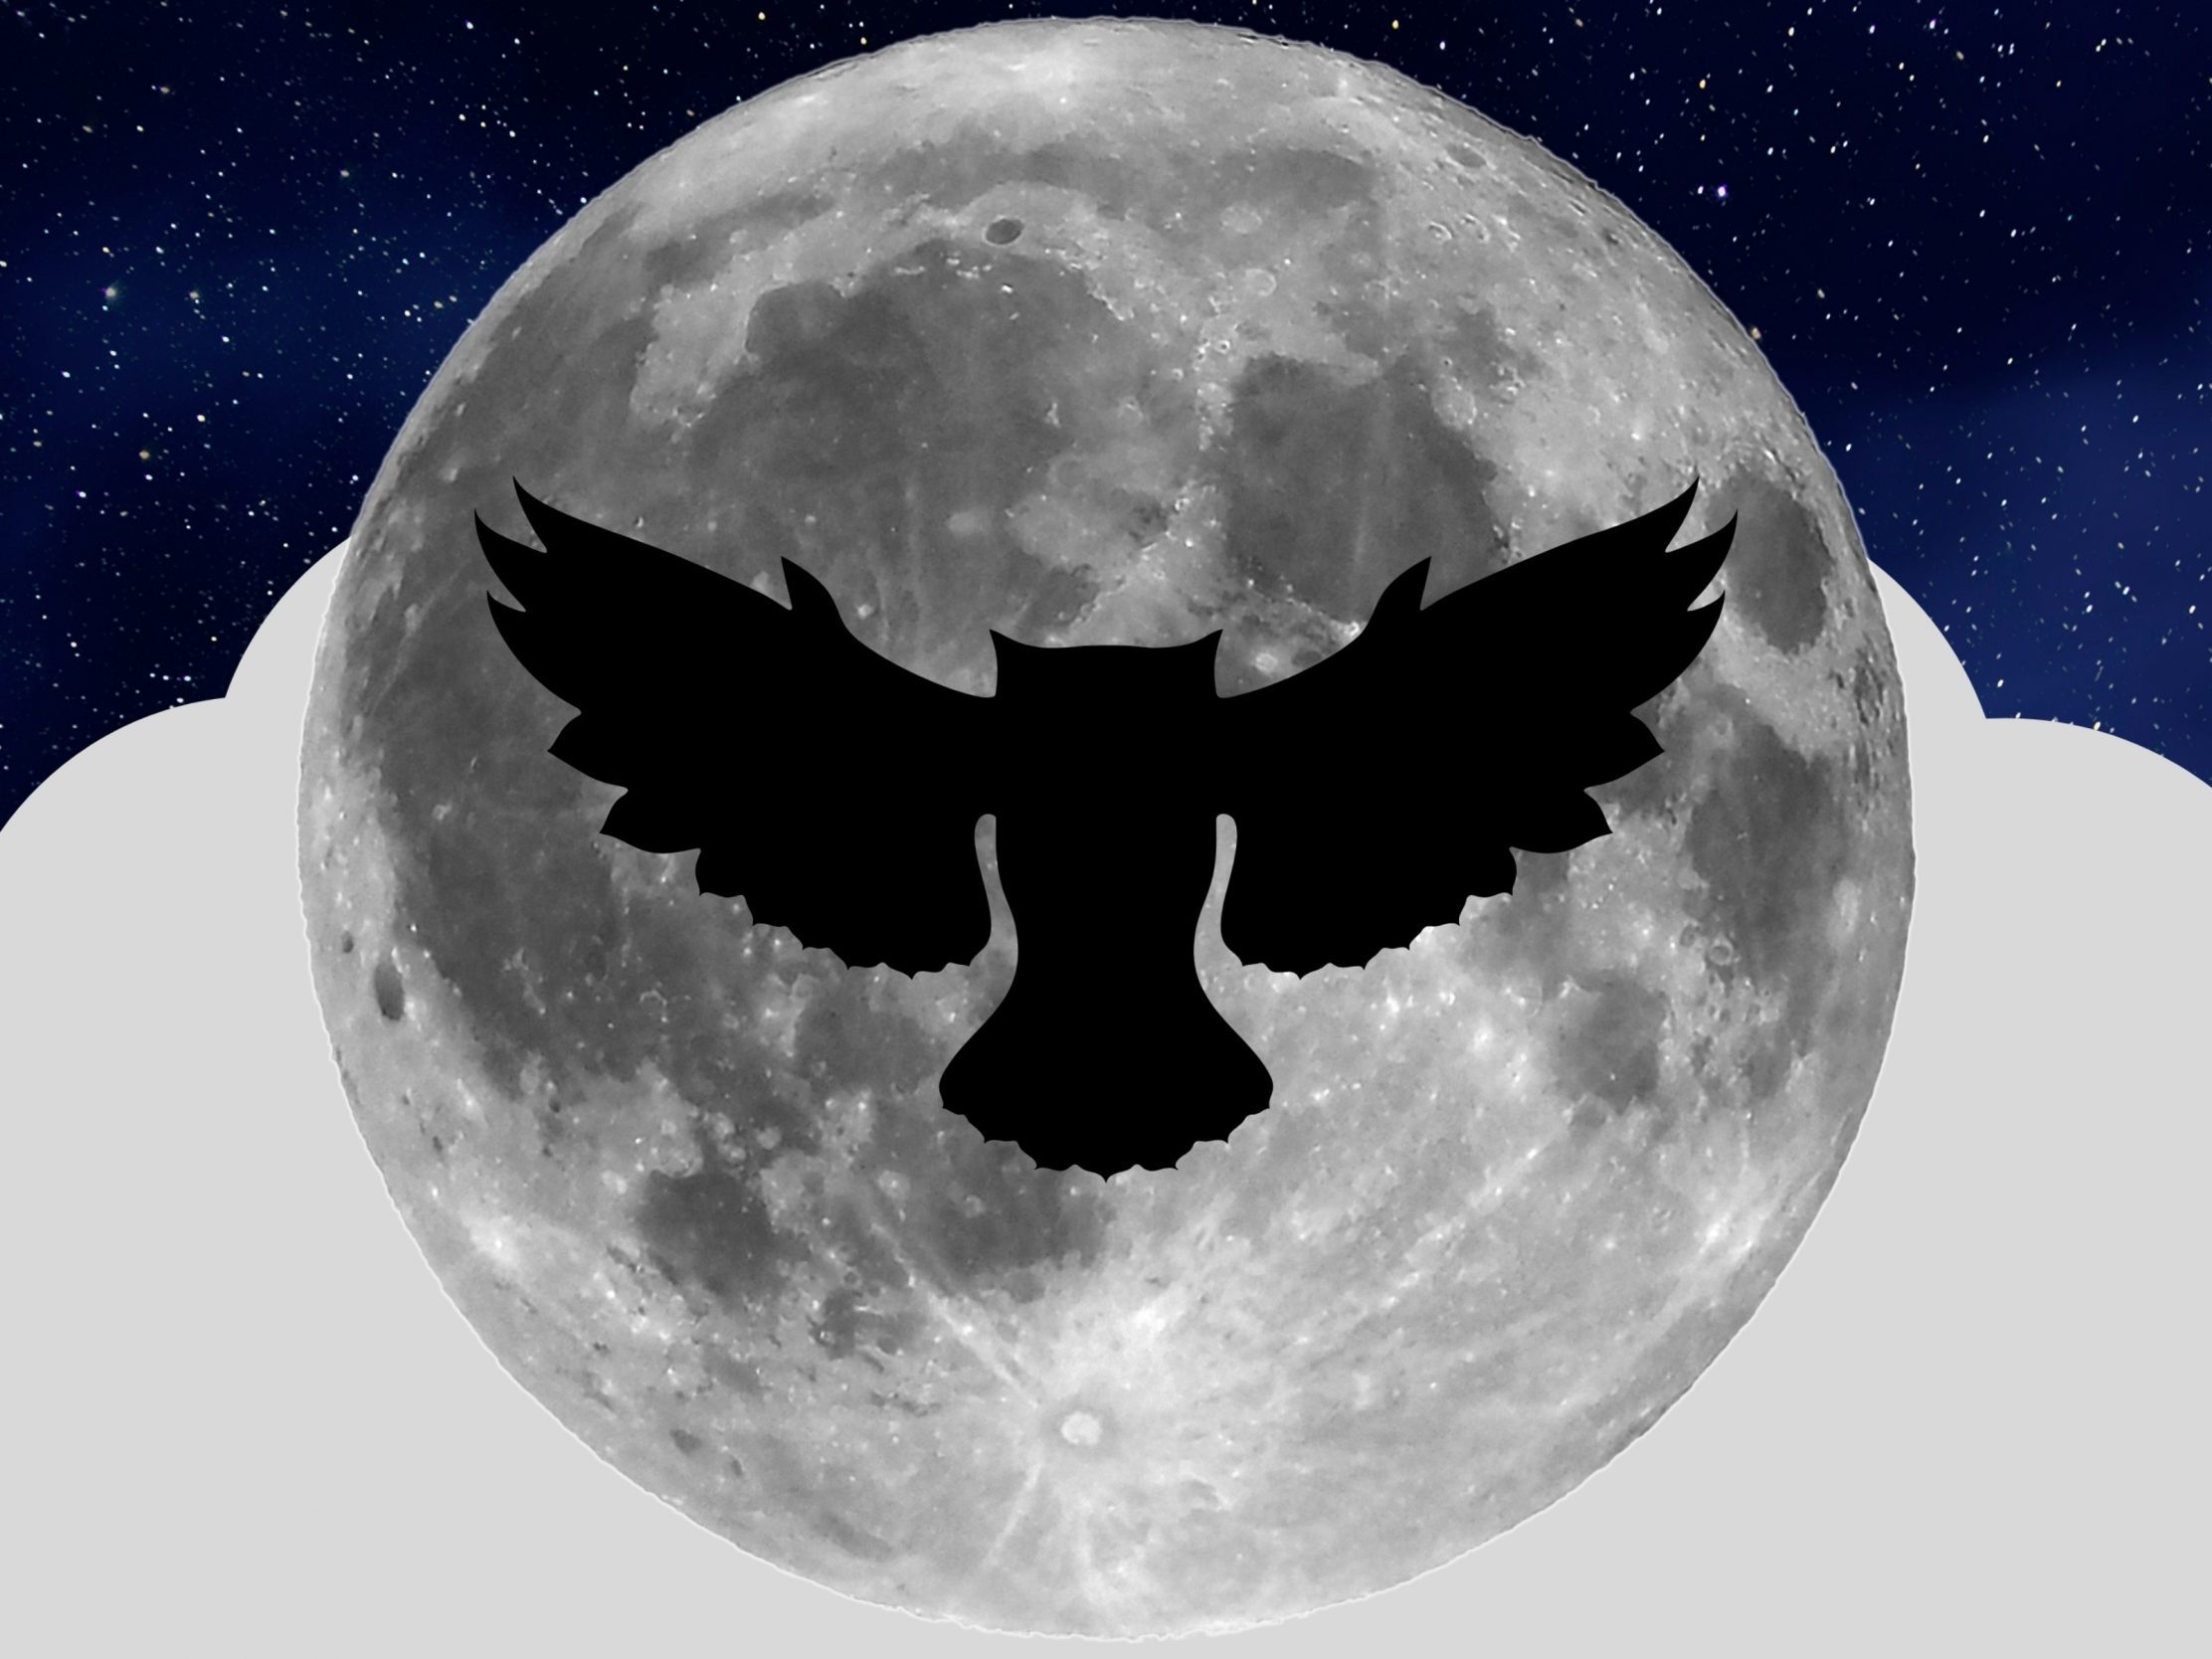 2224x1668 iPad Pro wallpapers Night Owl Full Moon iPad Wallpaper 2224x1668 pixels resolution